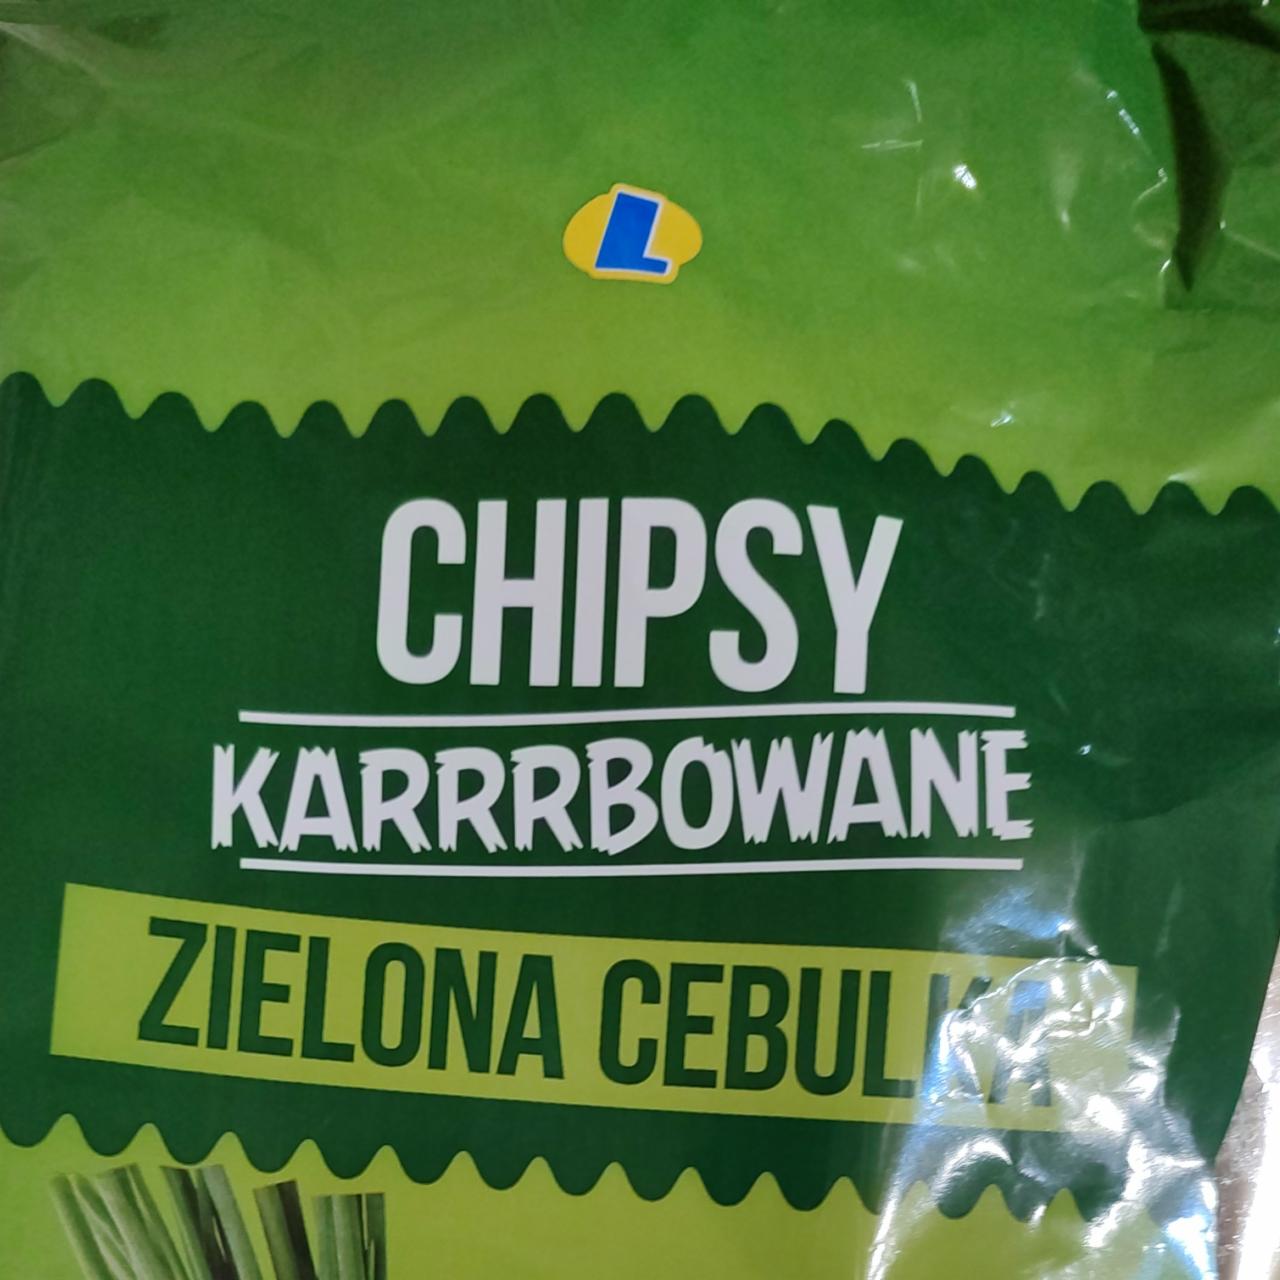 Zdjęcia - Chipsy karrrbowane zielona cebulka Lewiatan